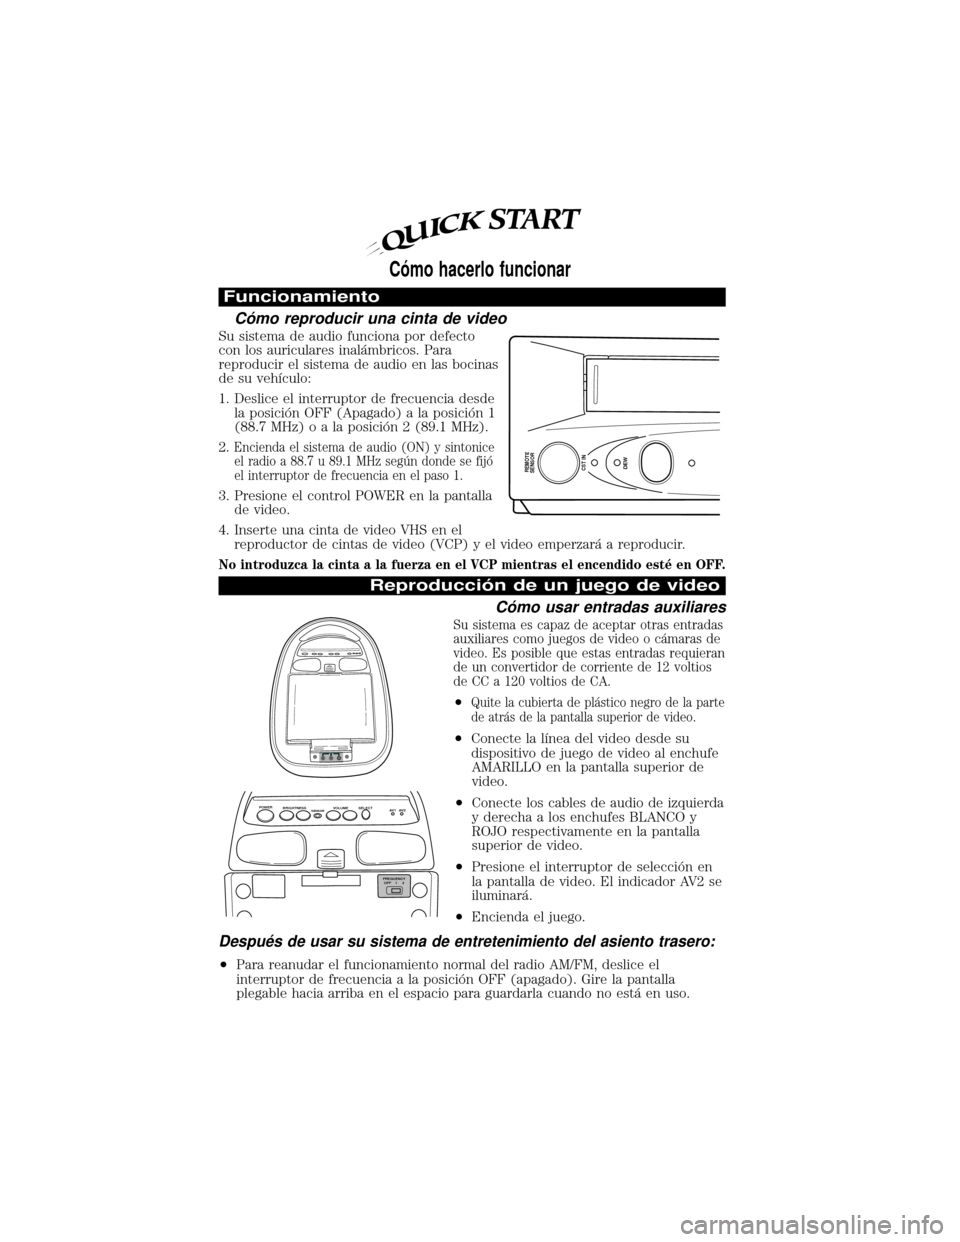 FORD EXPEDITION 2000 1.G Rear Seat Entertainment System Manual Funcionamiento
CoÂ mo reproducir una cinta de video
Su sistema de audio funciona por defecto
con los auriculares inalaÂ mbricos. Para
reproducir el sistema de audio en las bocinas
de su vehÛculo:
1